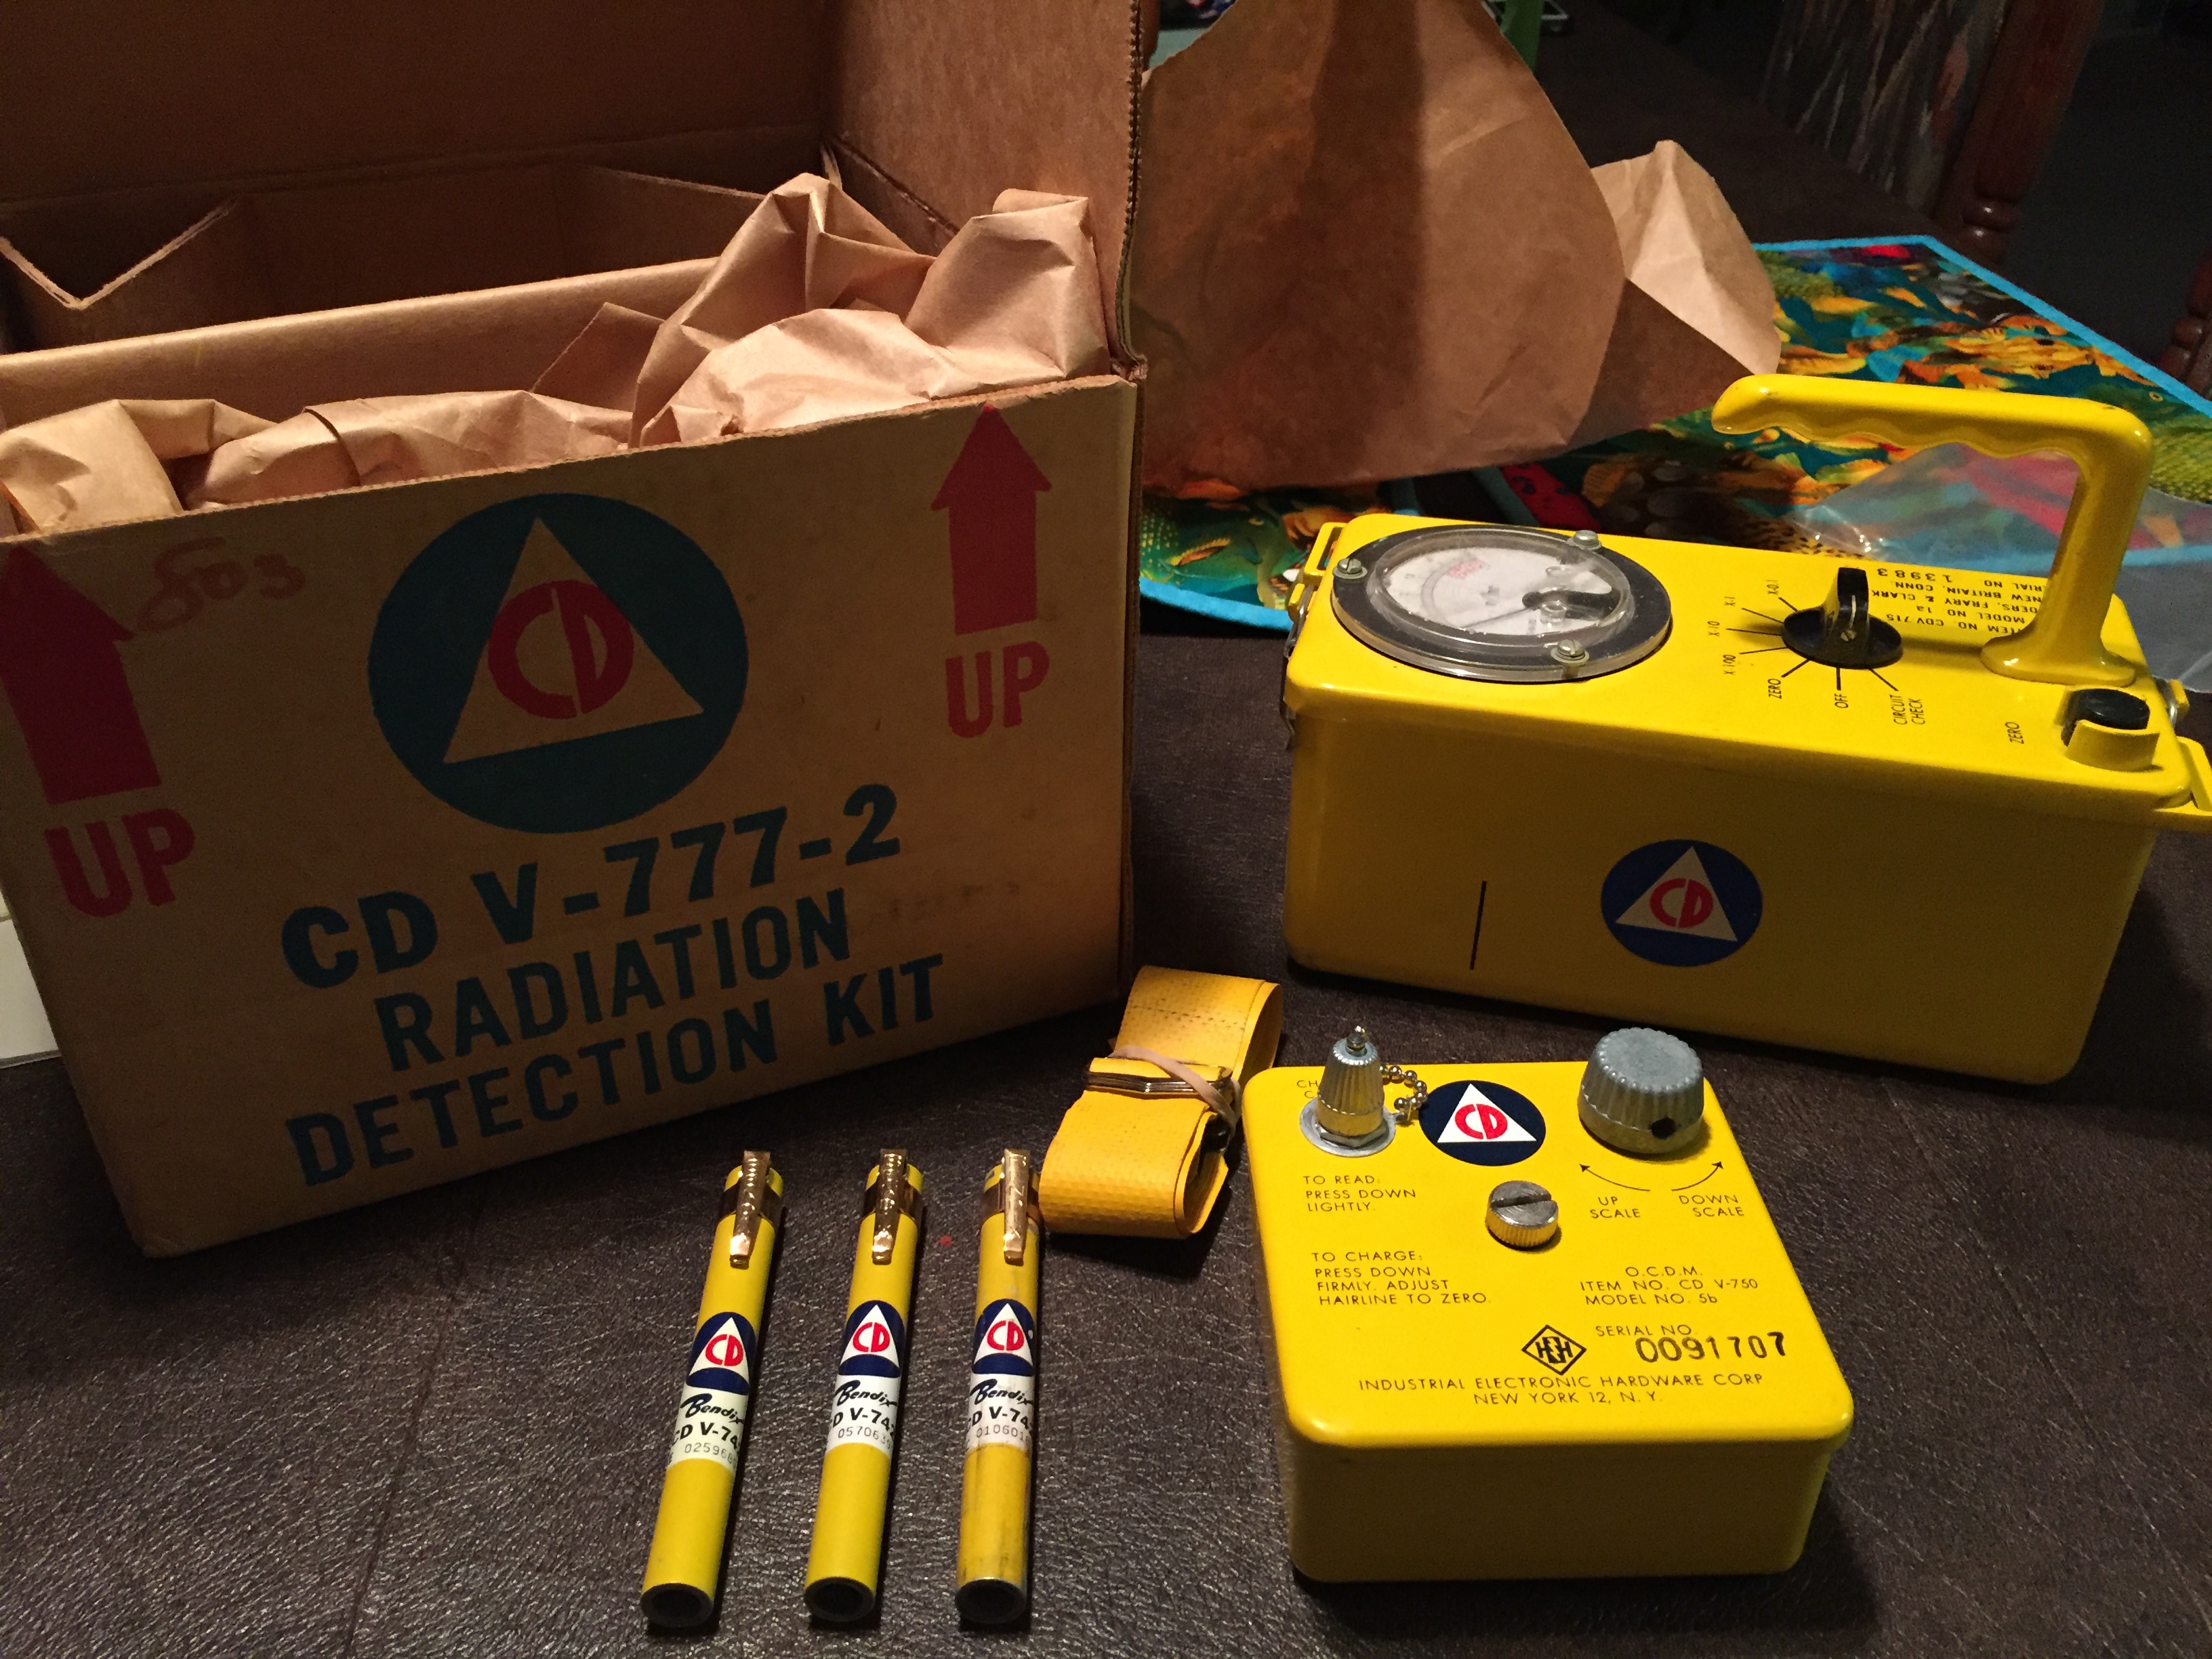 radiation kit artifact